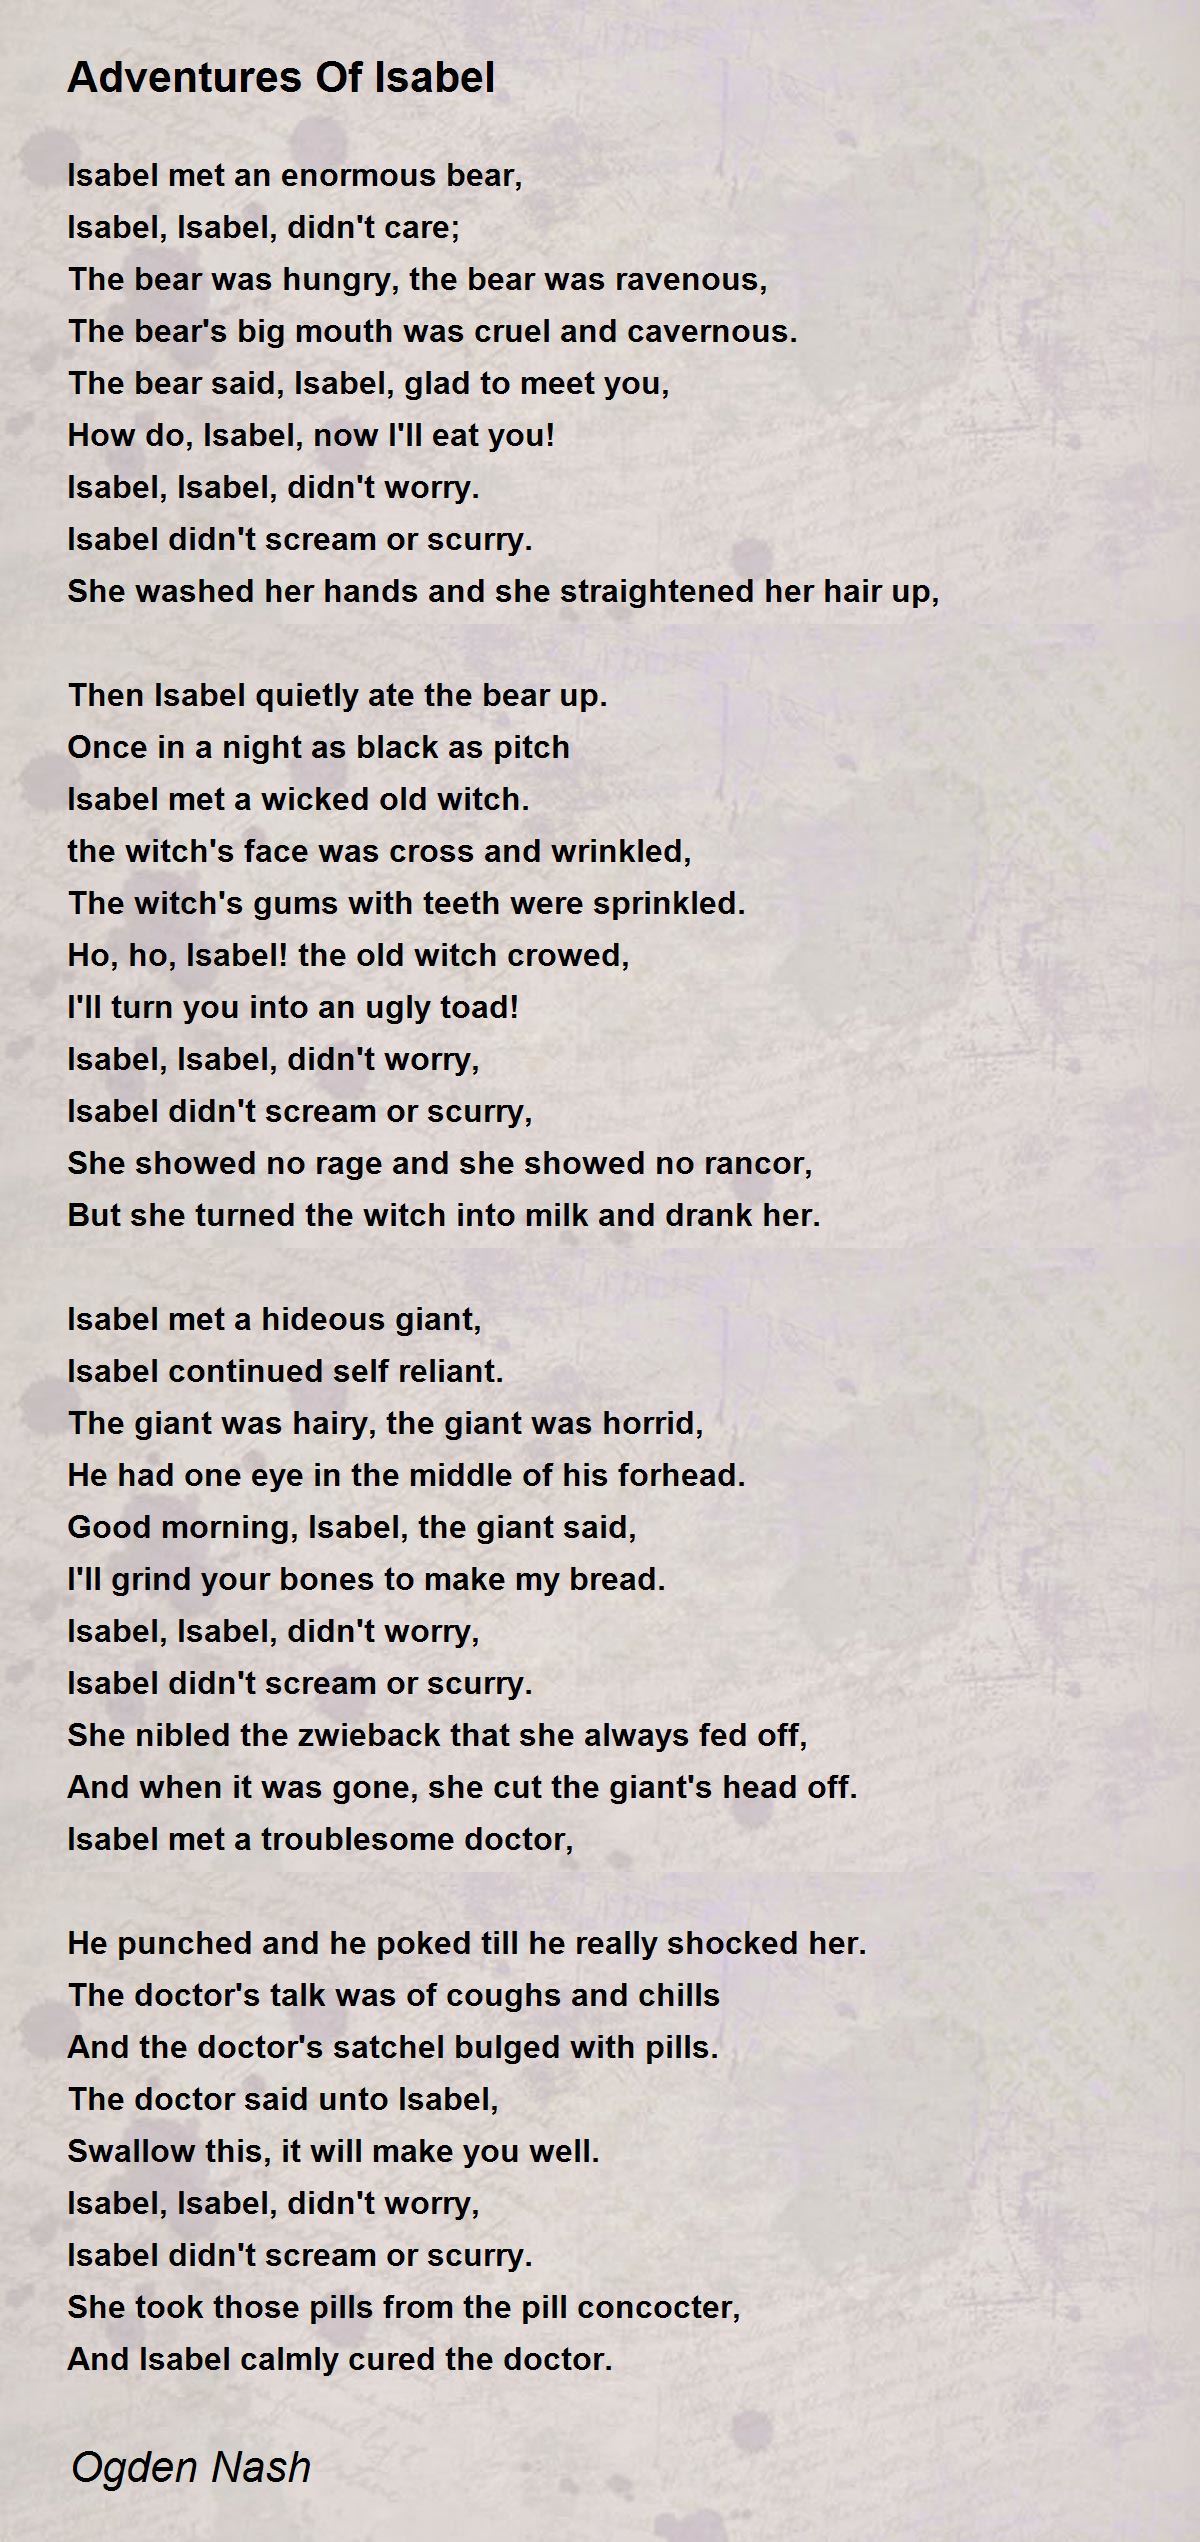 Adventures Of Isabel Poem by Ogden Nash - Poem Hunter